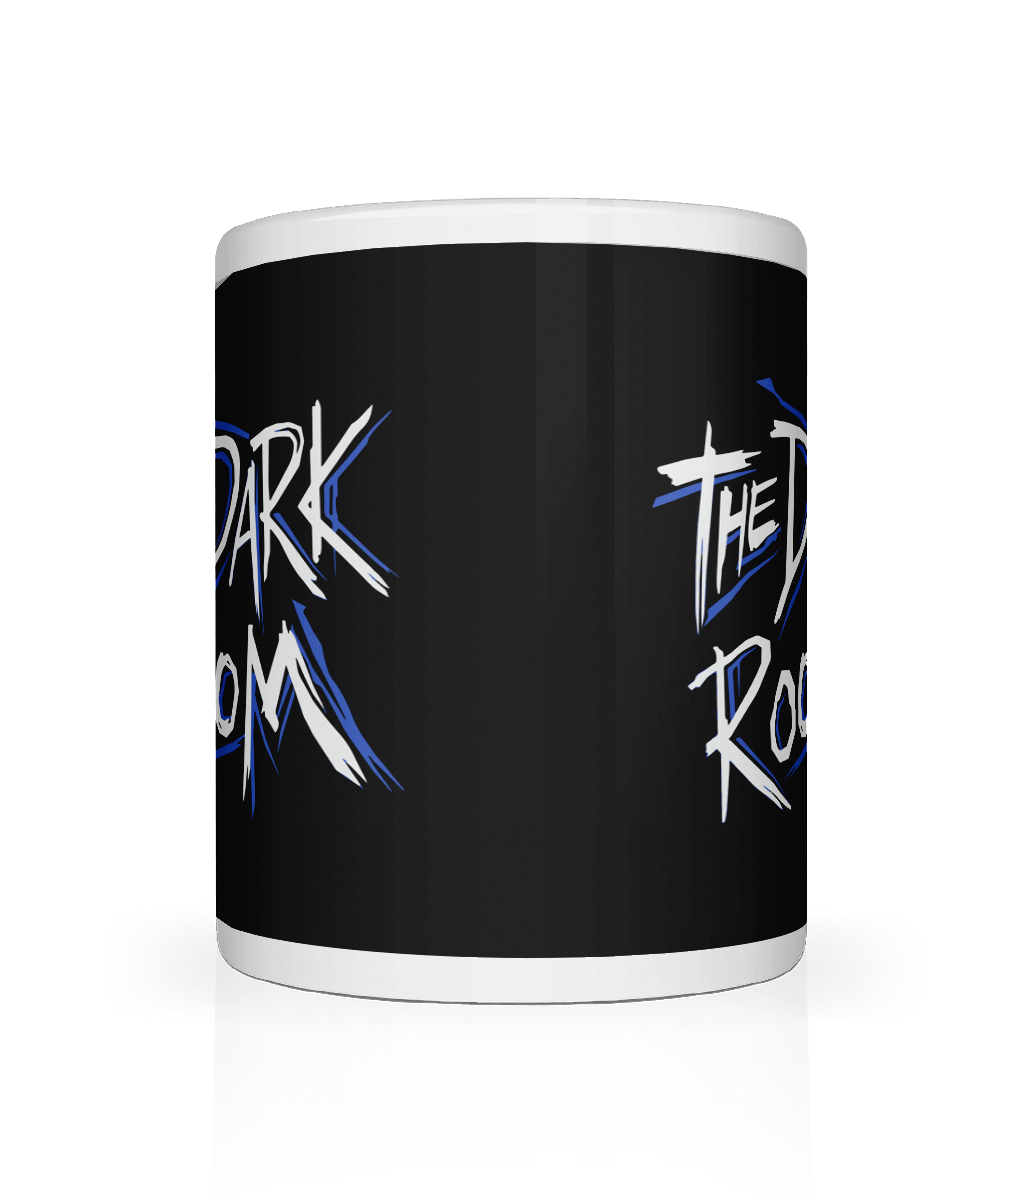 The Dark Room Logo Mug